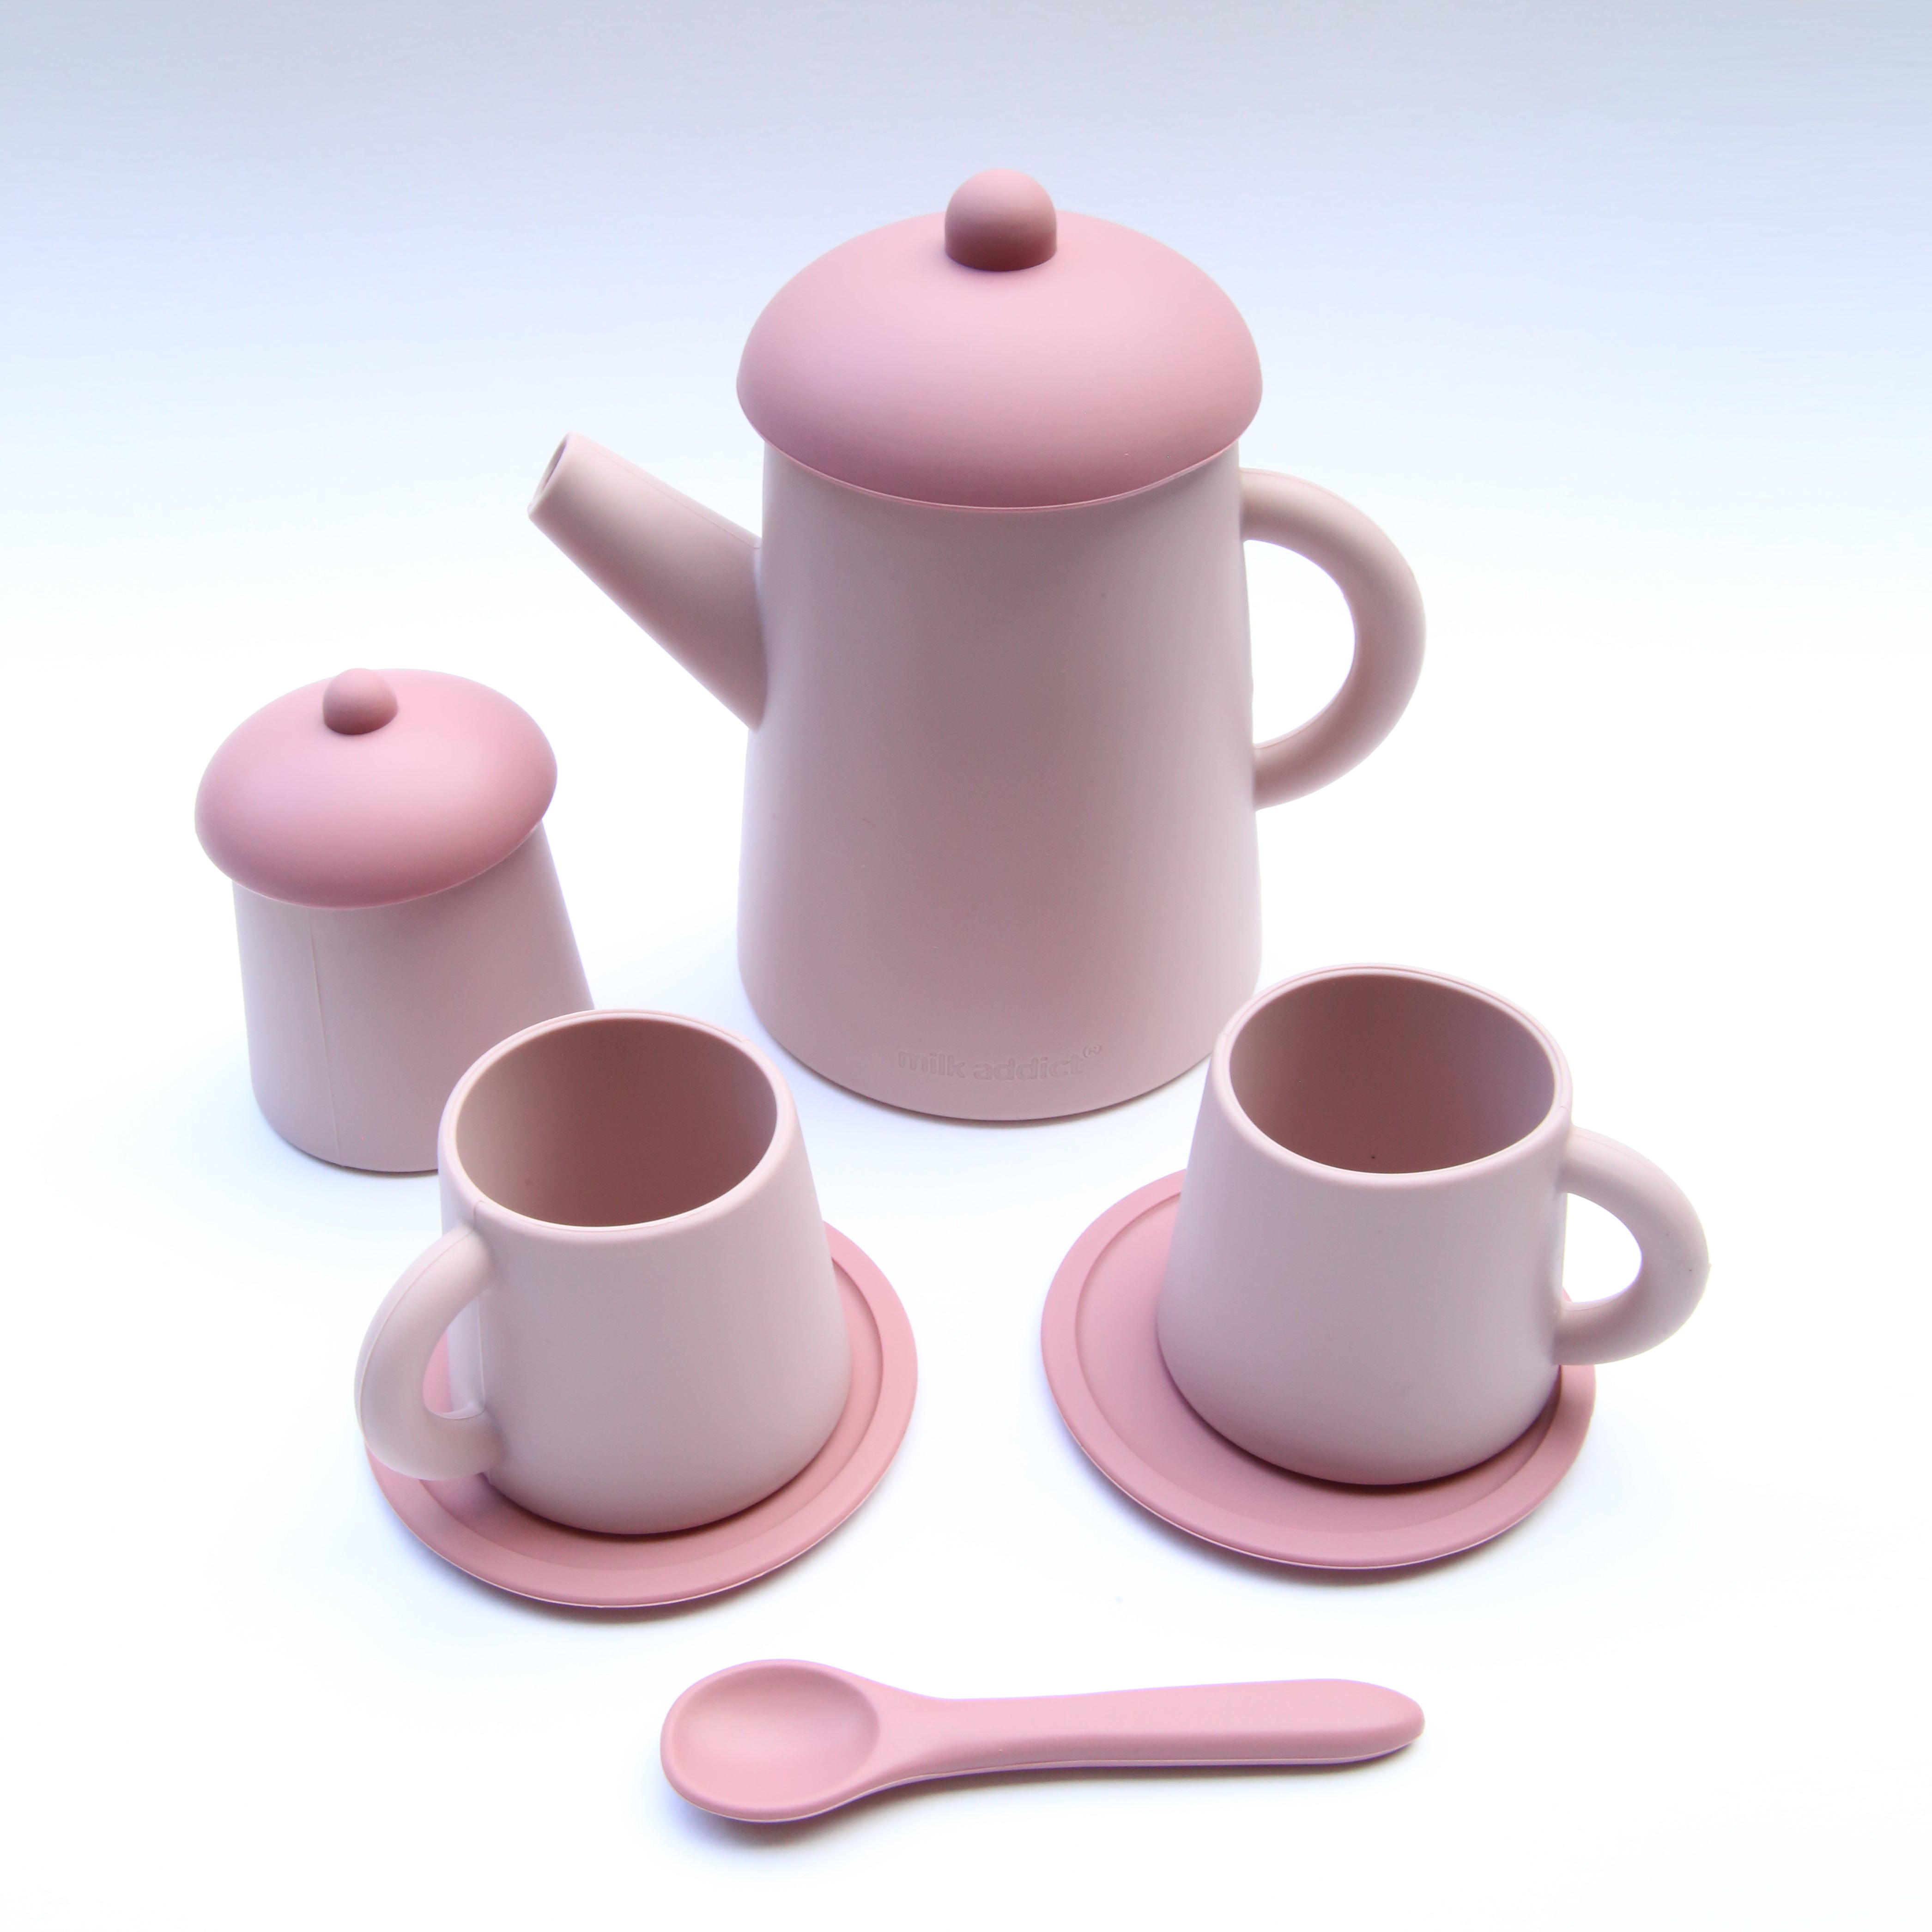 tea set silicone toy